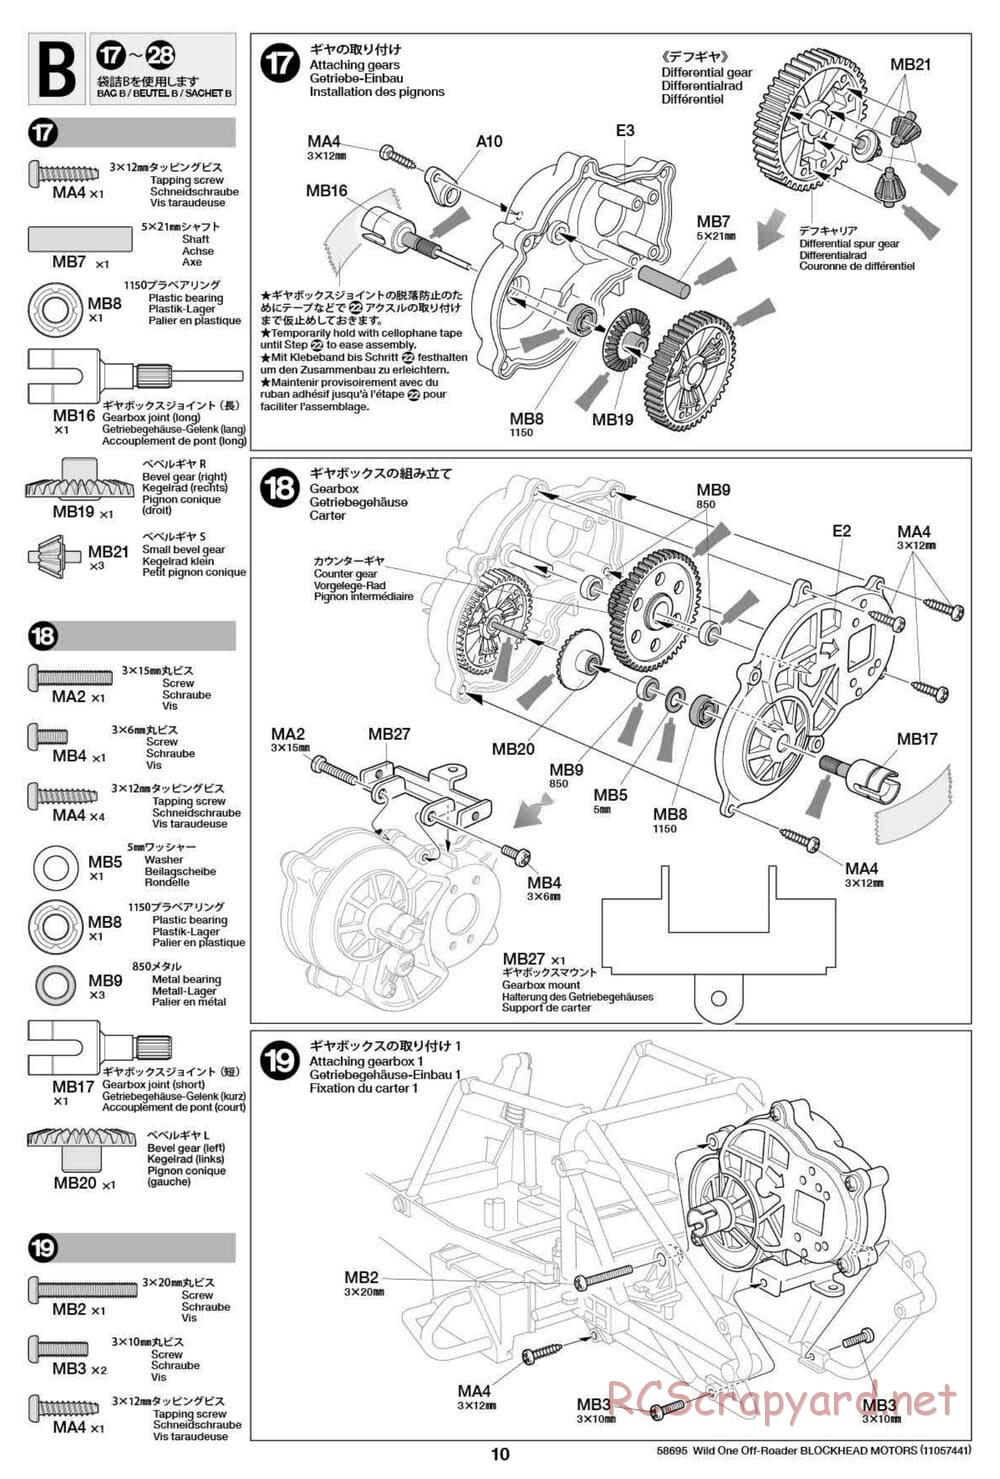 Tamiya - Wild One Off Roader Blockhead Motors - FAV Chassis - Manual - Page 10